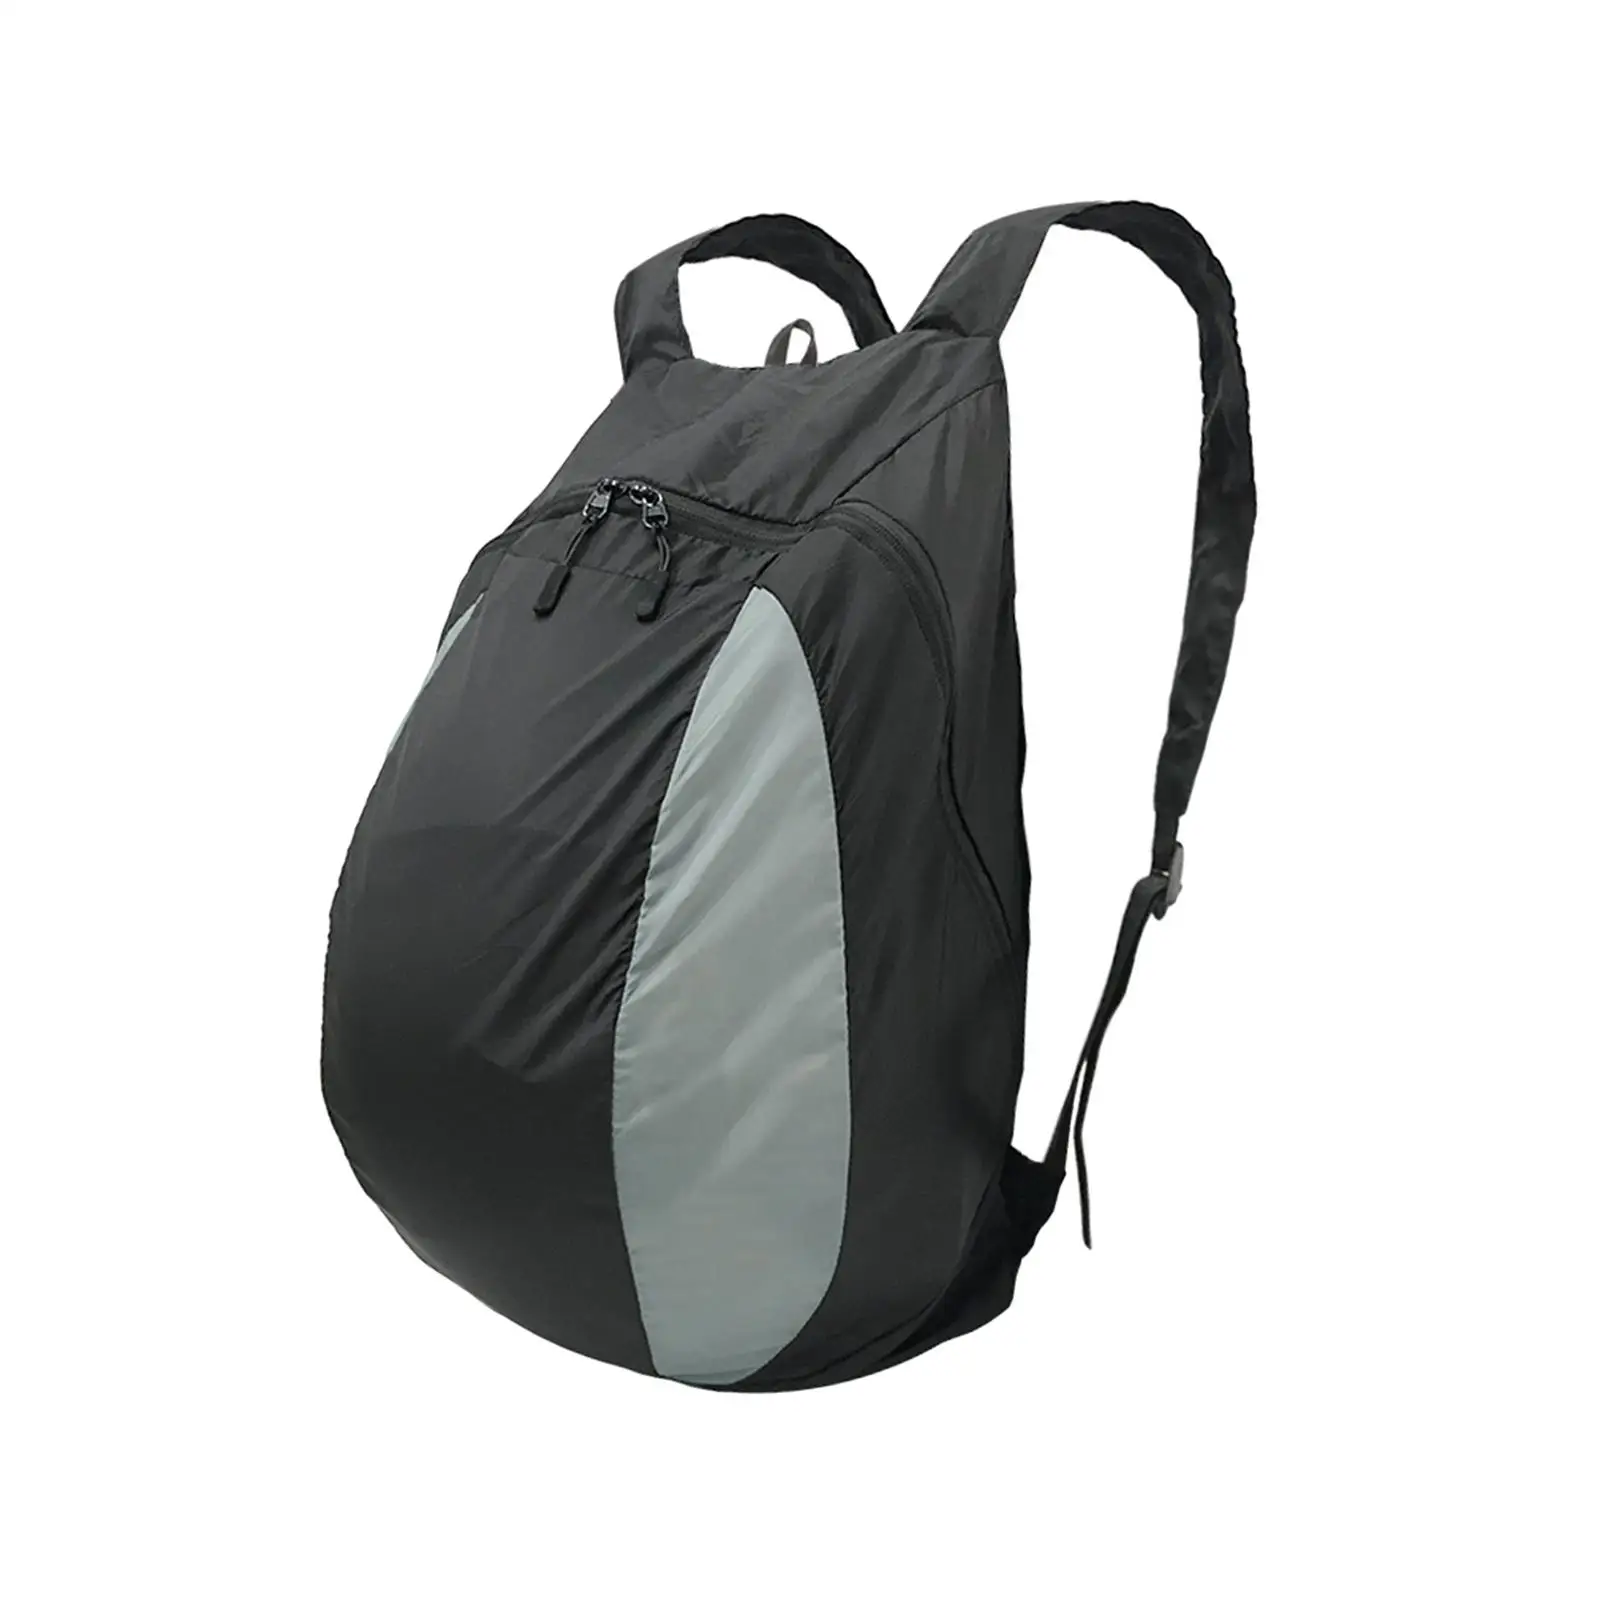 Basketball Shoulder Bag Folding Wear Resistant Sports Backpack Soccer Storage Bag Holder for Outdoor Activities Clothes